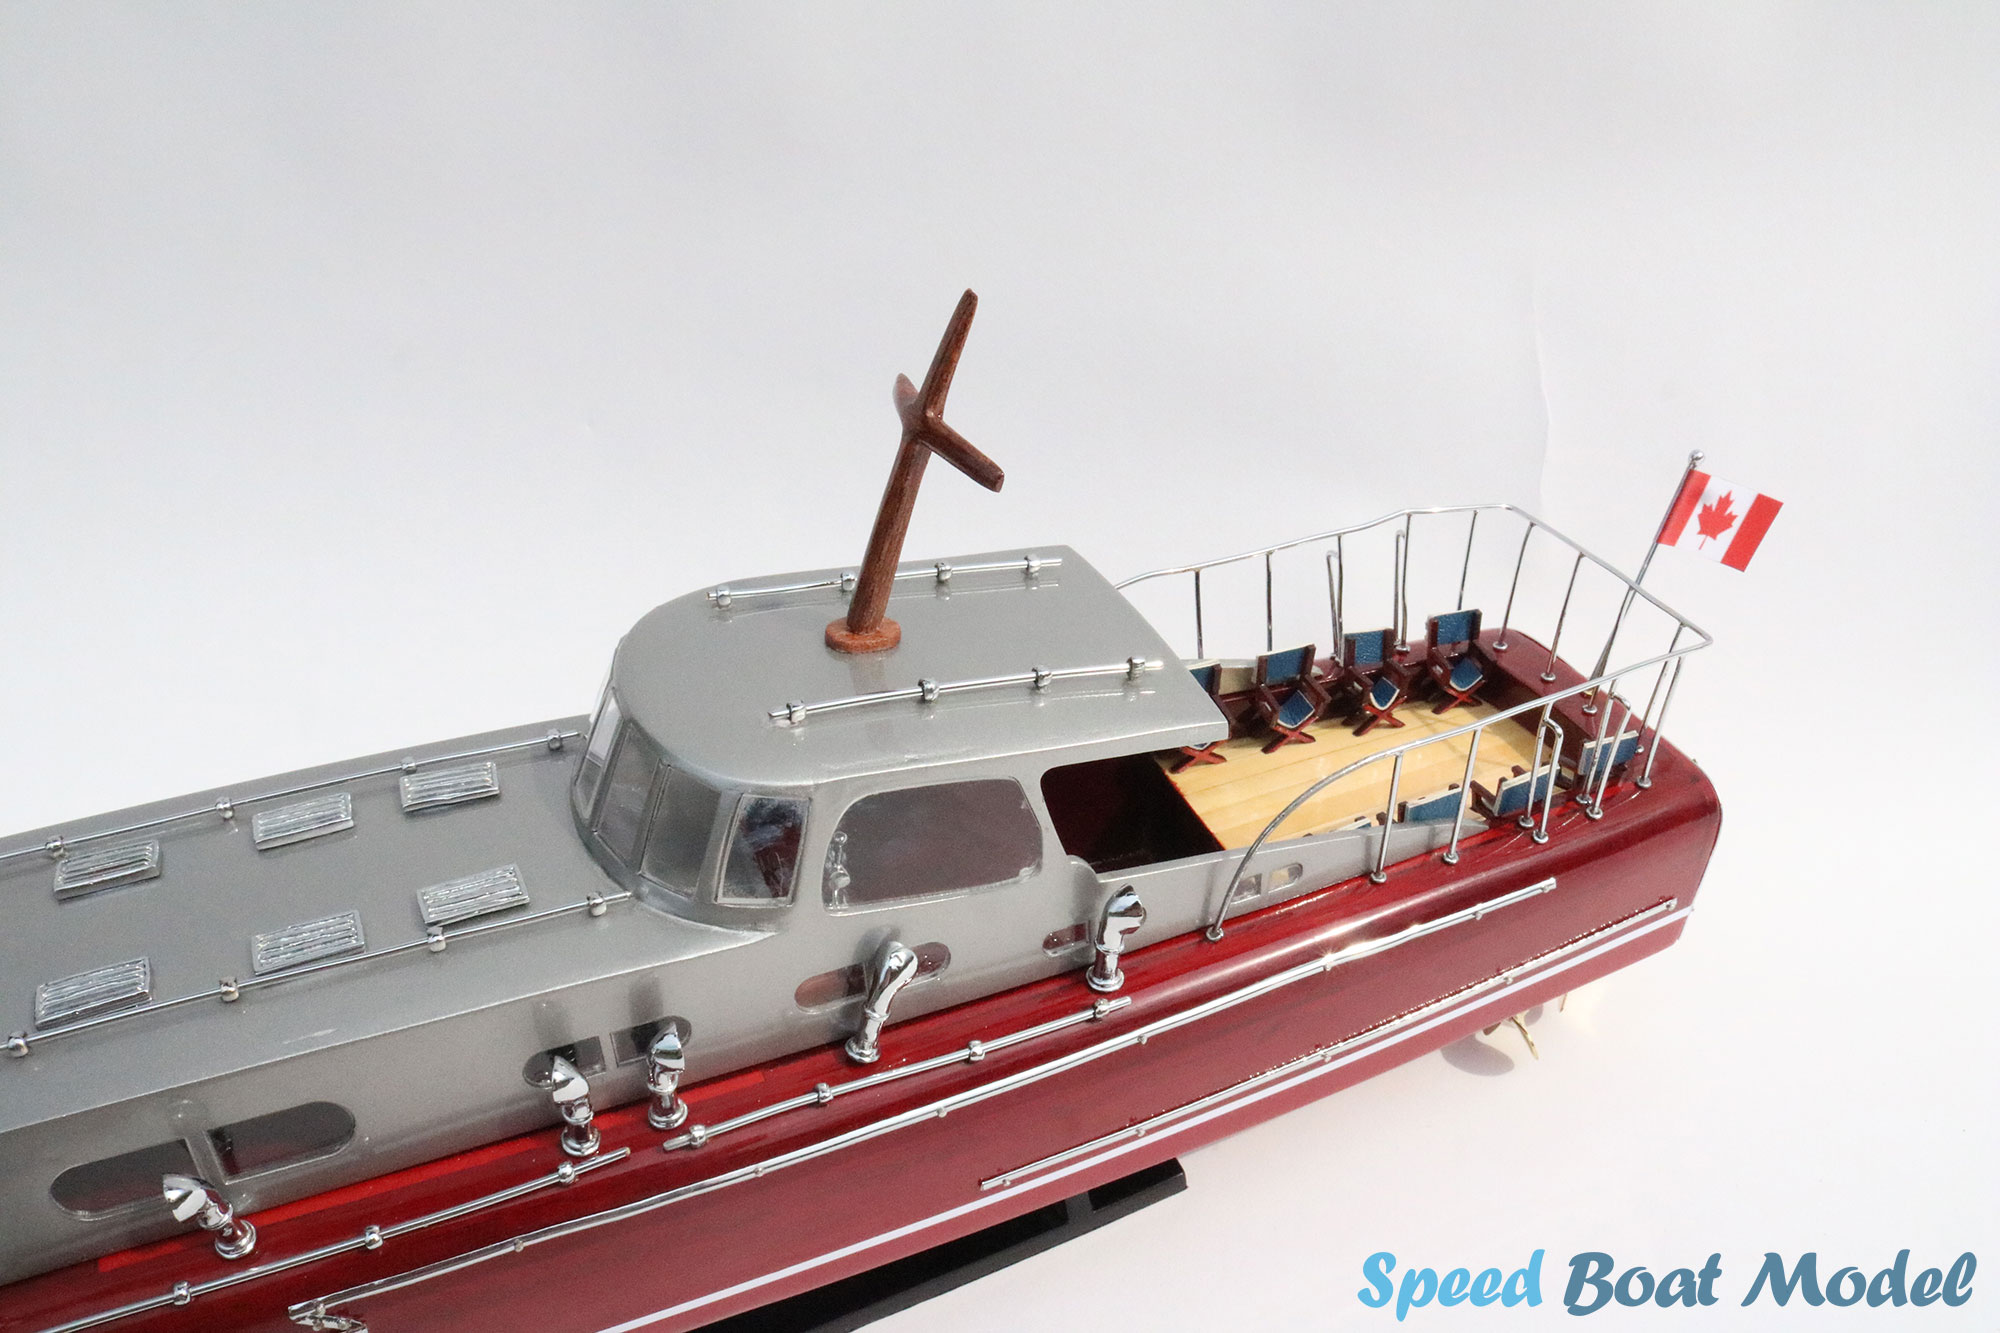 Hacker Craft Thunderbird 1939 – 55 Foot Speed Boat Model 24.4"